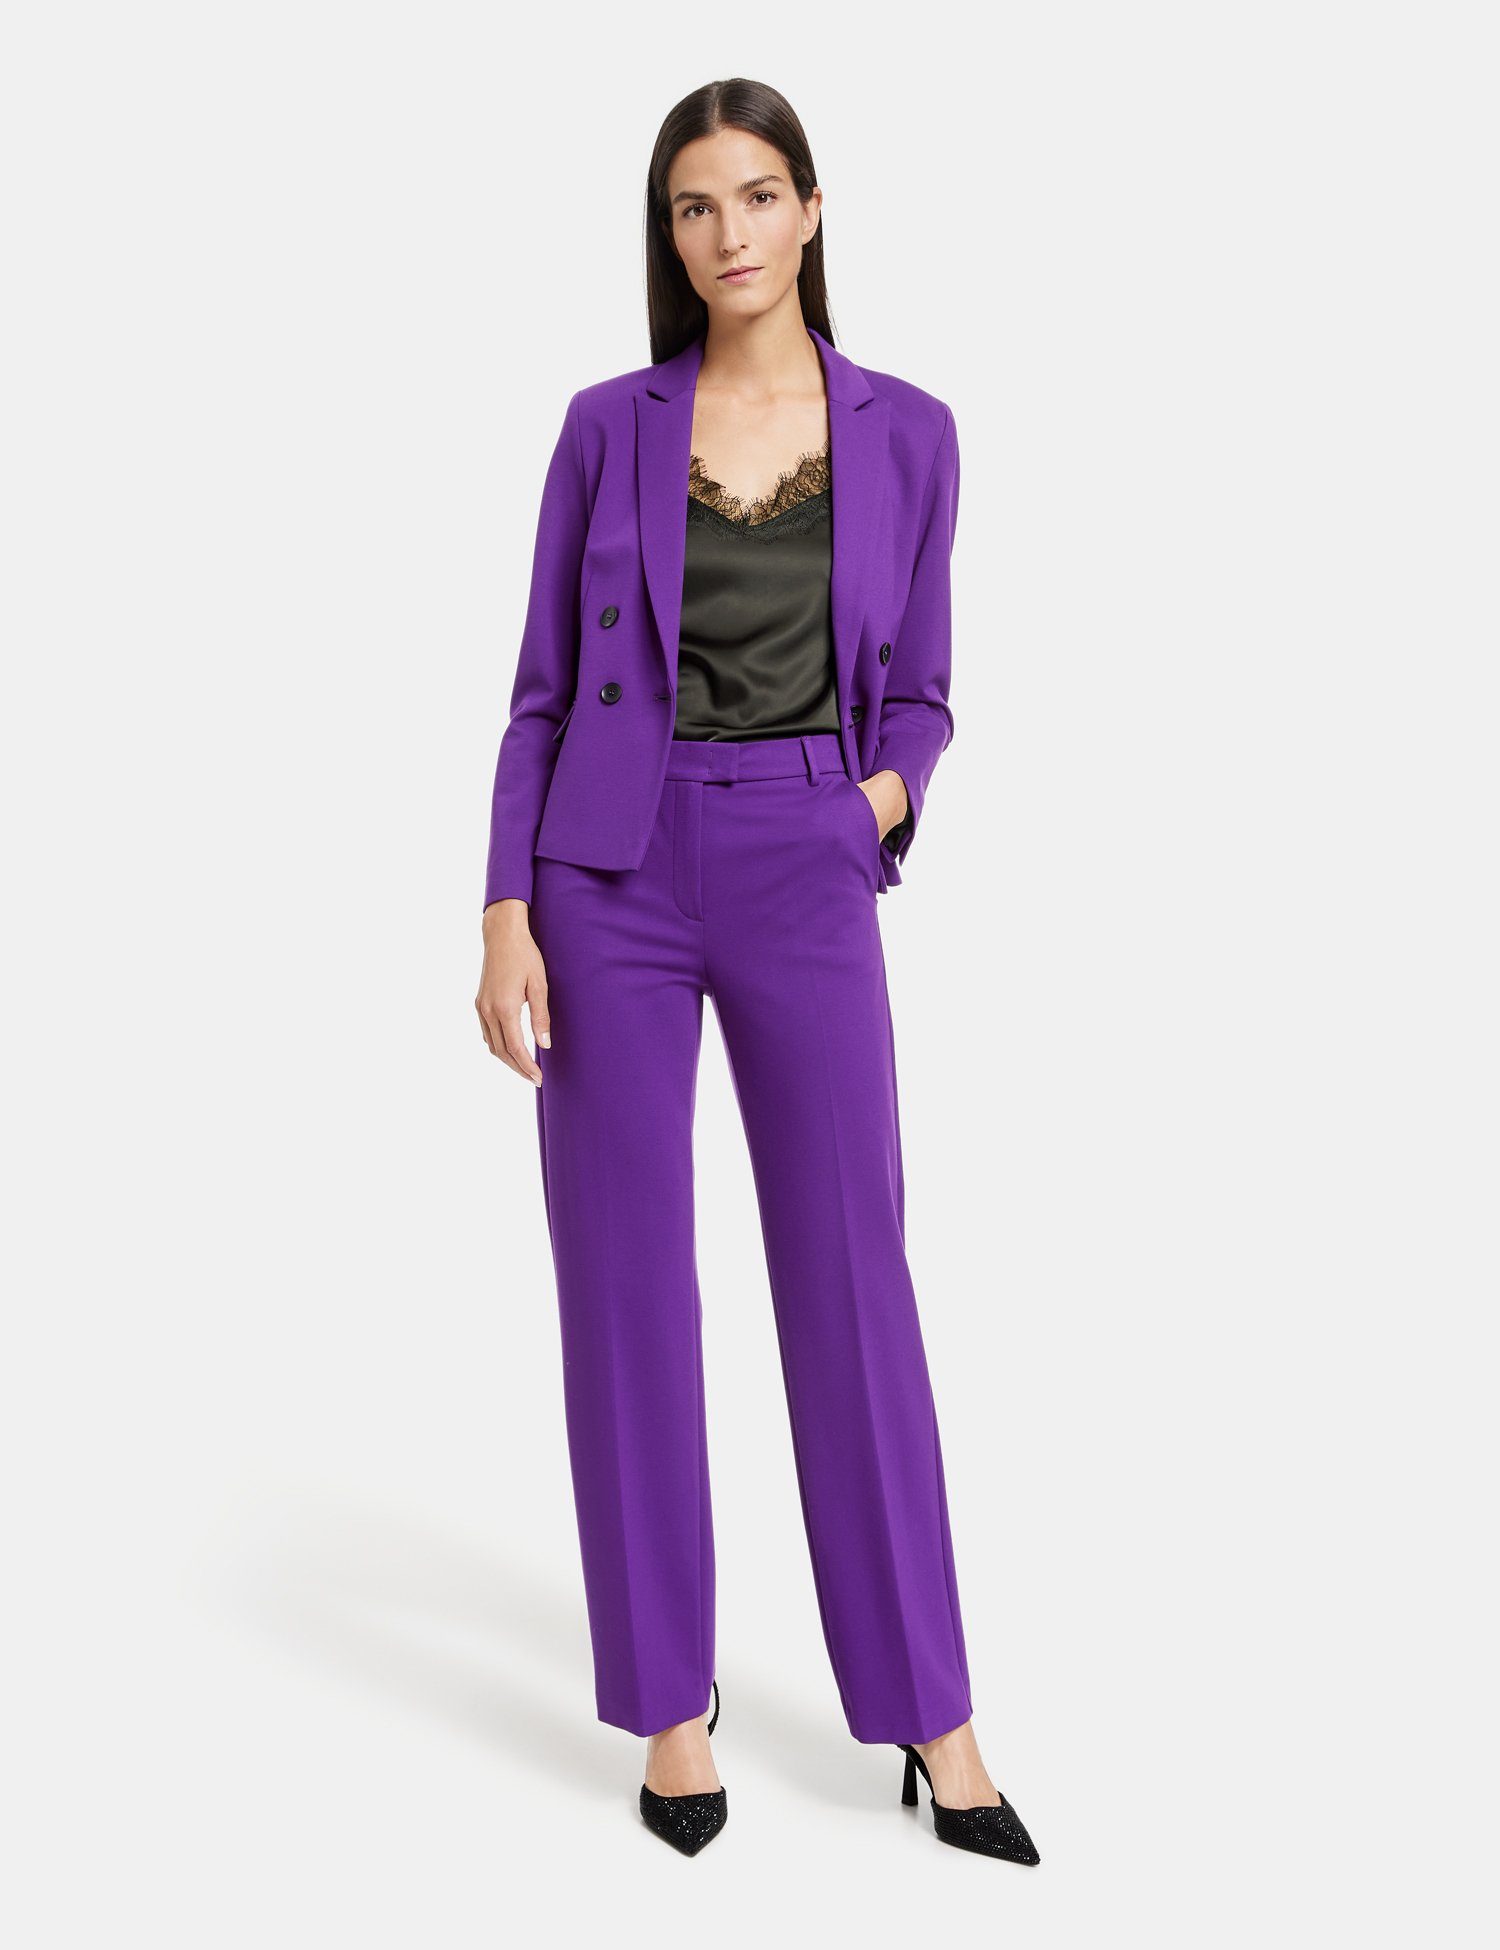 GERRY WEBER Stoffhose Elegante Hose Bügelfalte mit Dark Violet